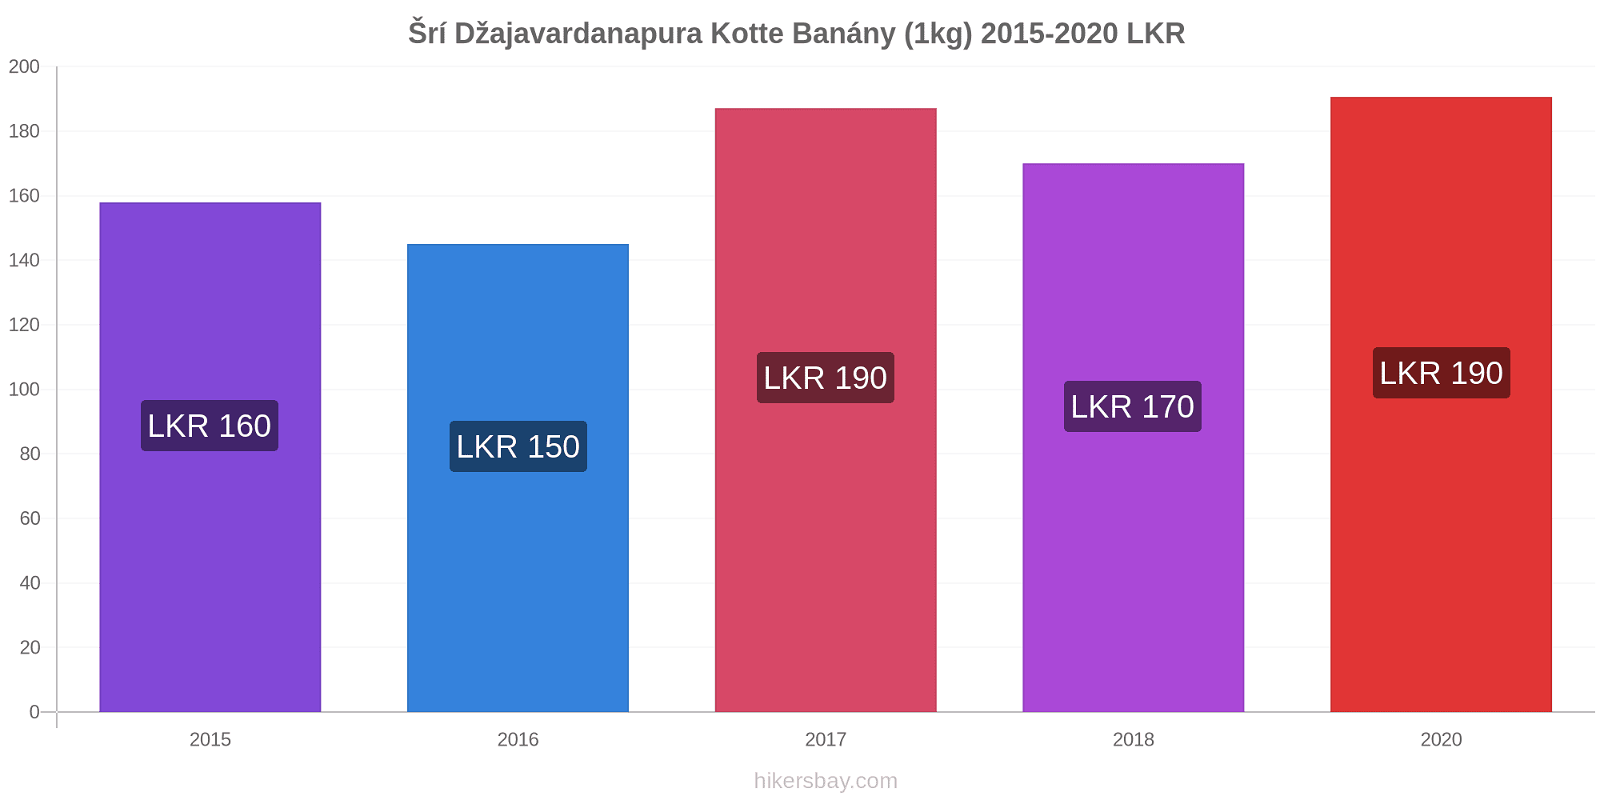 Šrí Džajavardanapura Kotte změny cen Banány (1kg) hikersbay.com